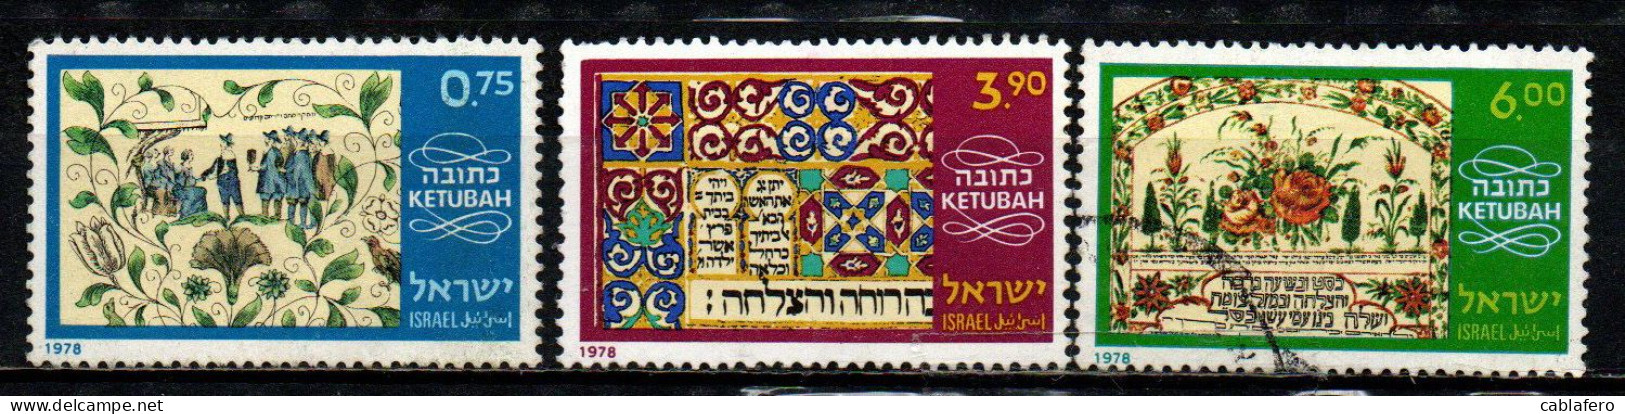 ISRAELE - 1978 - CONTRATTI DI MATRIMONIO - USATI - Usati (senza Tab)